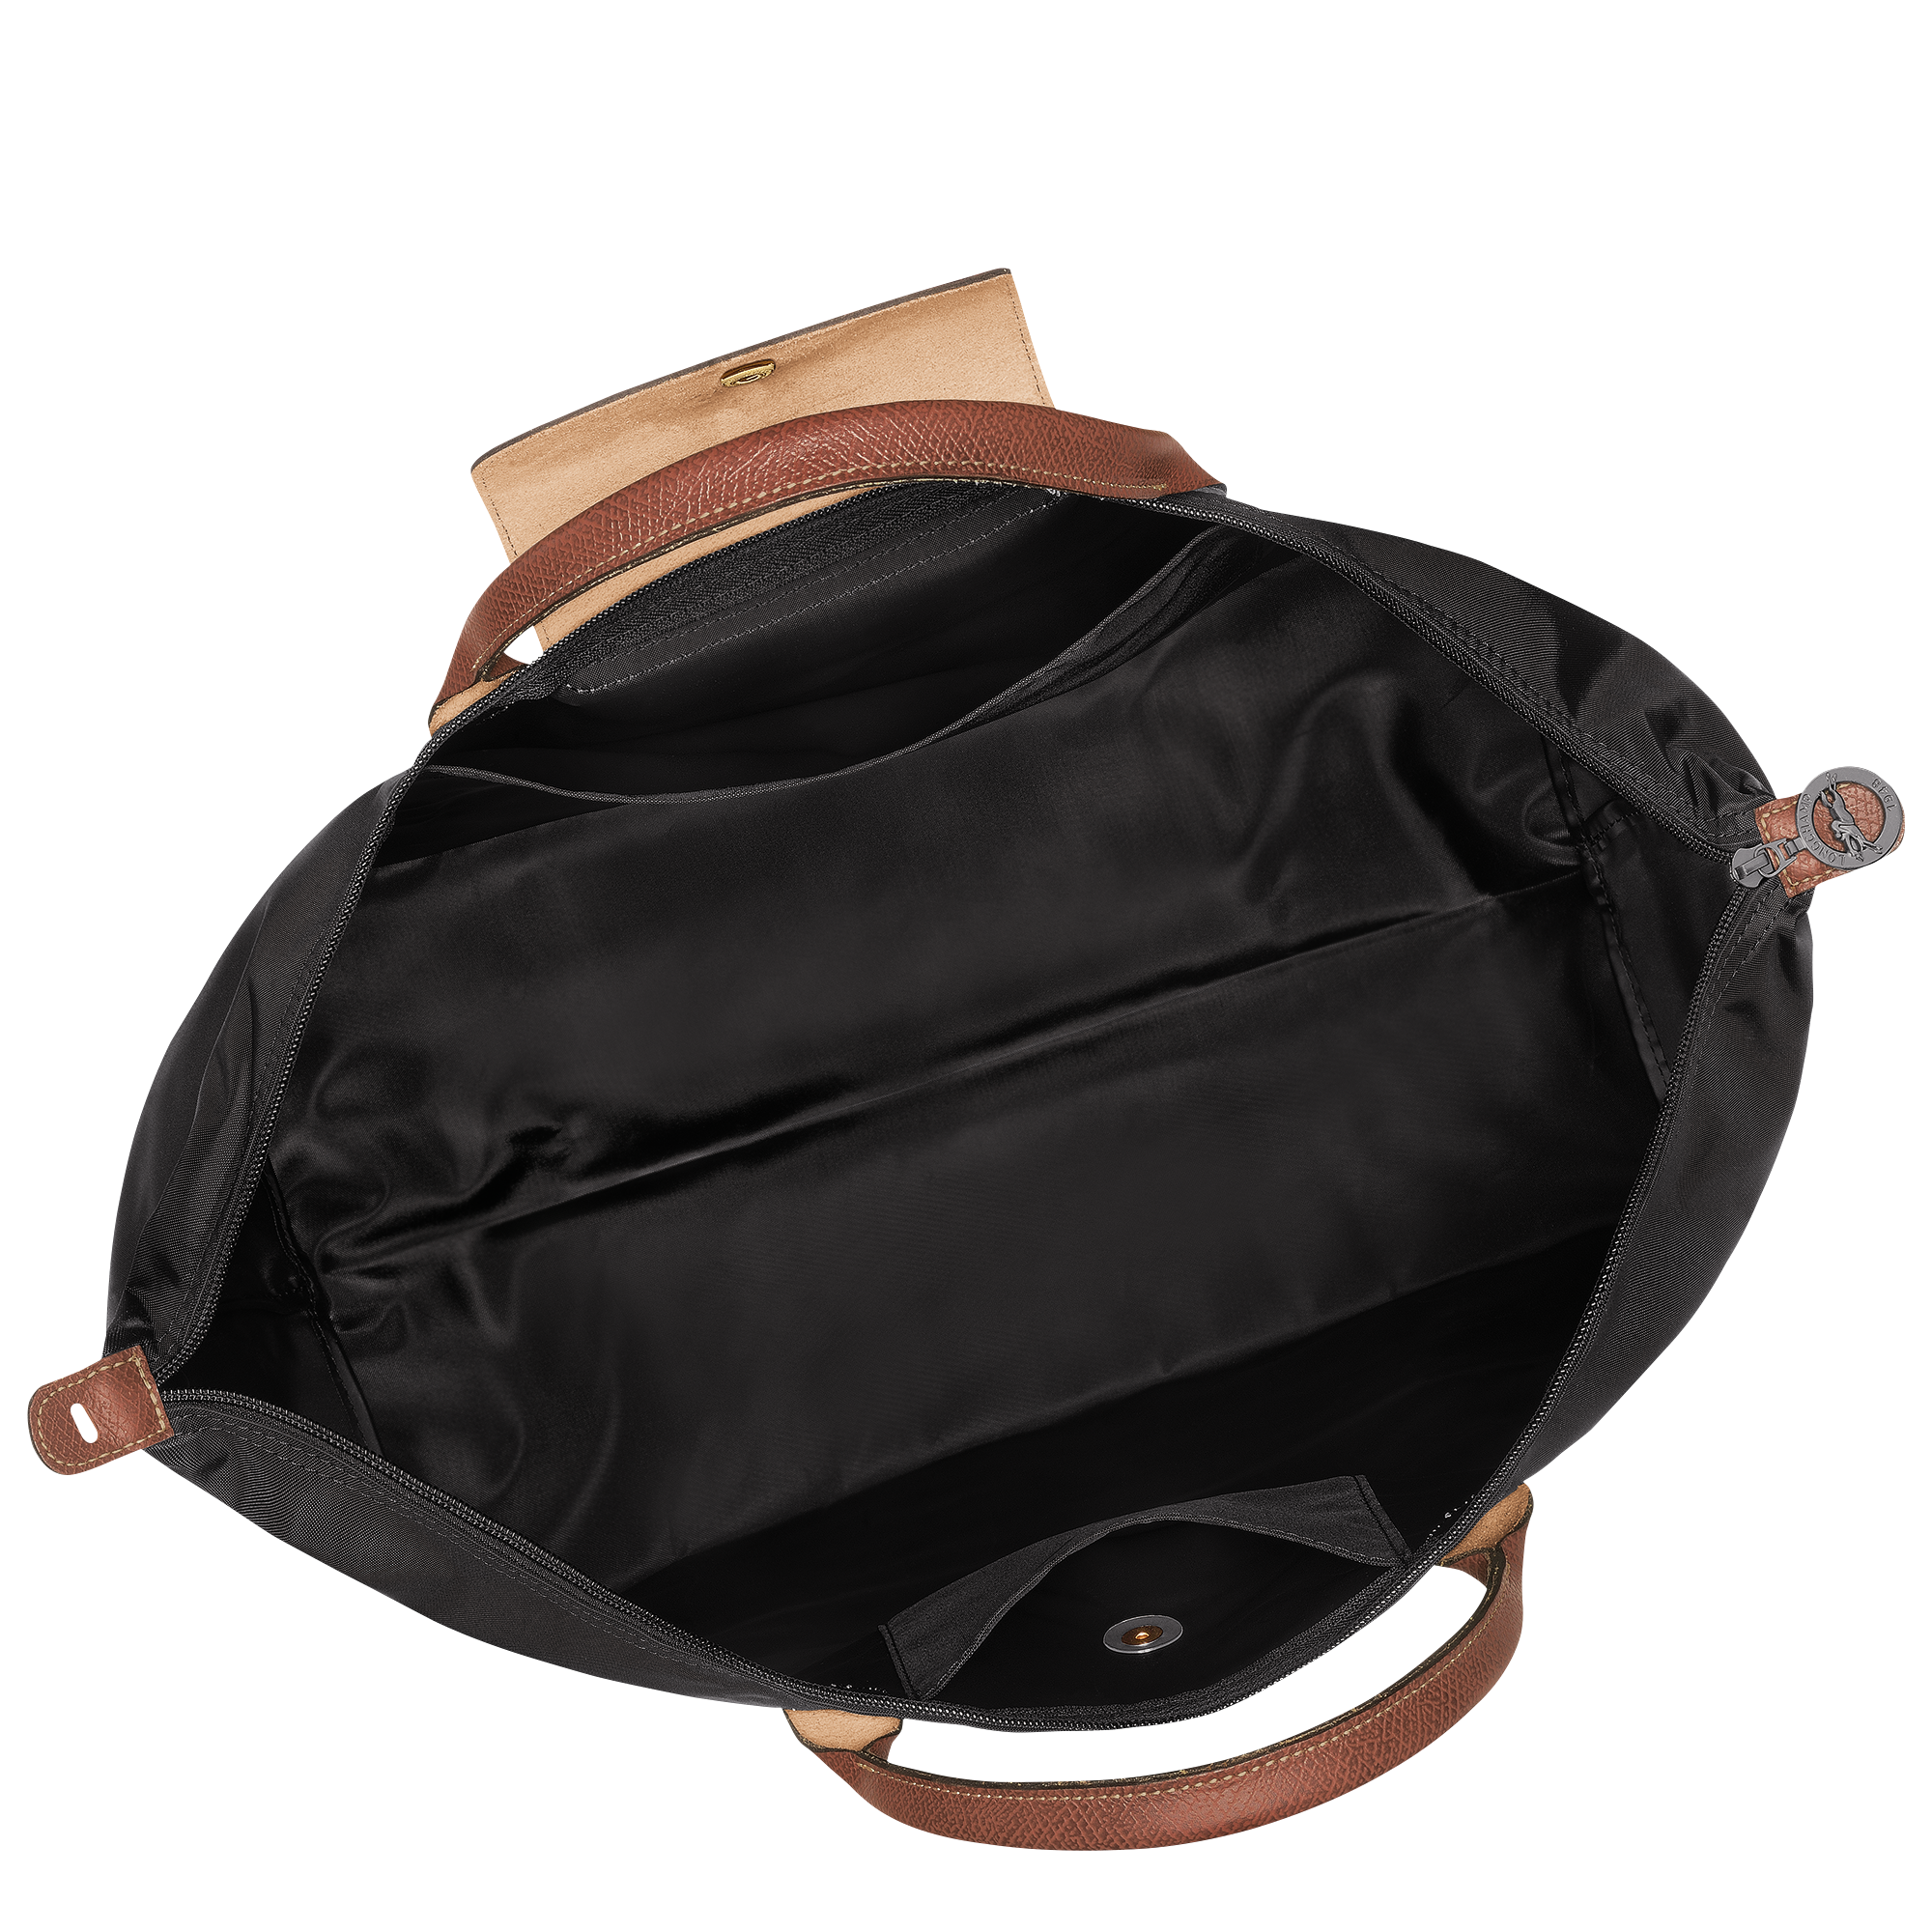 Le Pliage Original Travel bag S, Black